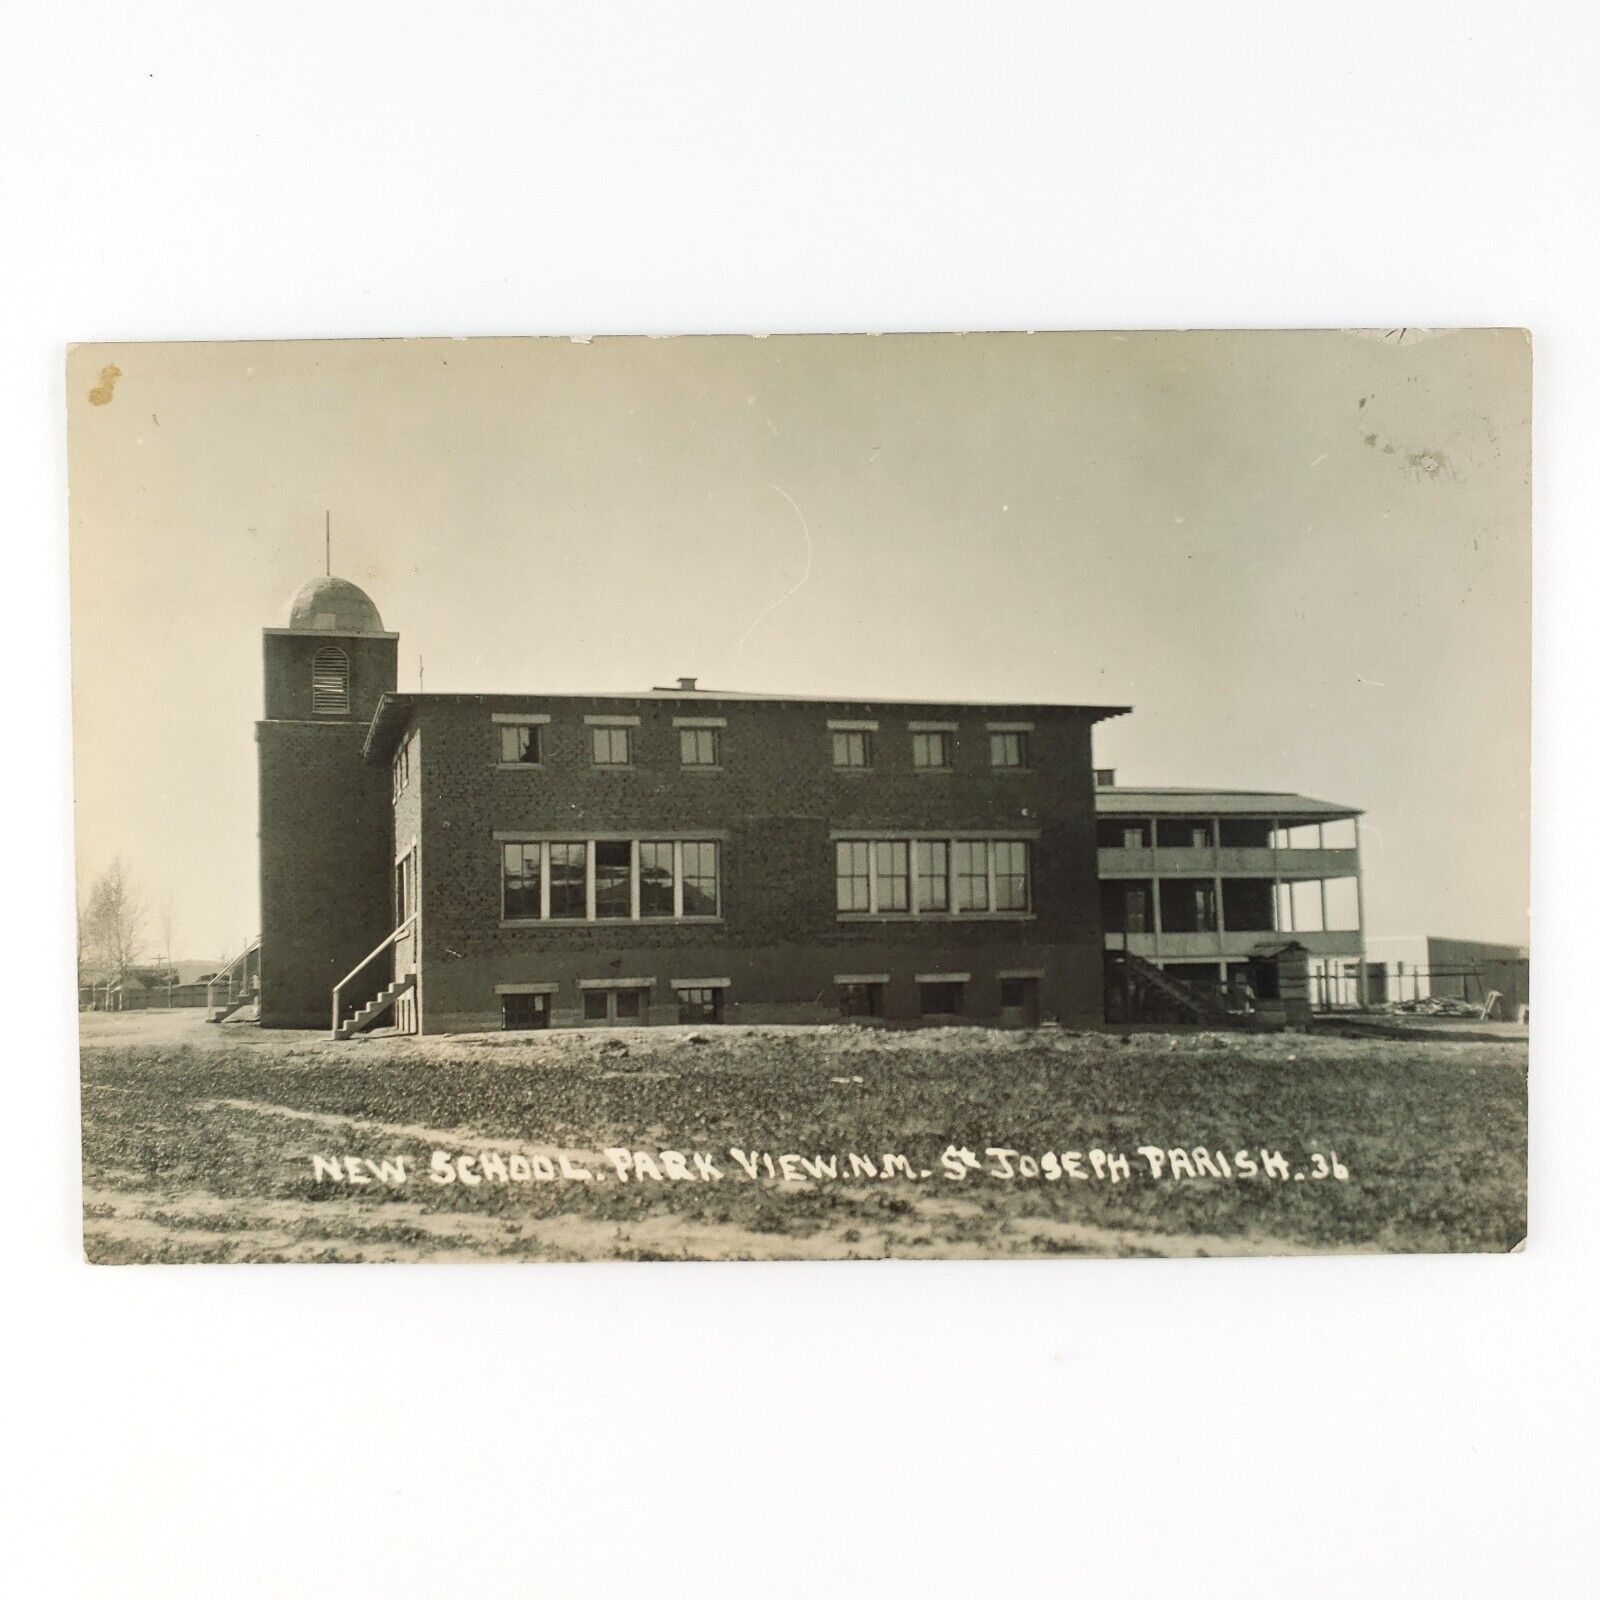 St Joseph Parish School RPPC Postcard 1920s Vintage Real Photo Park View D1029